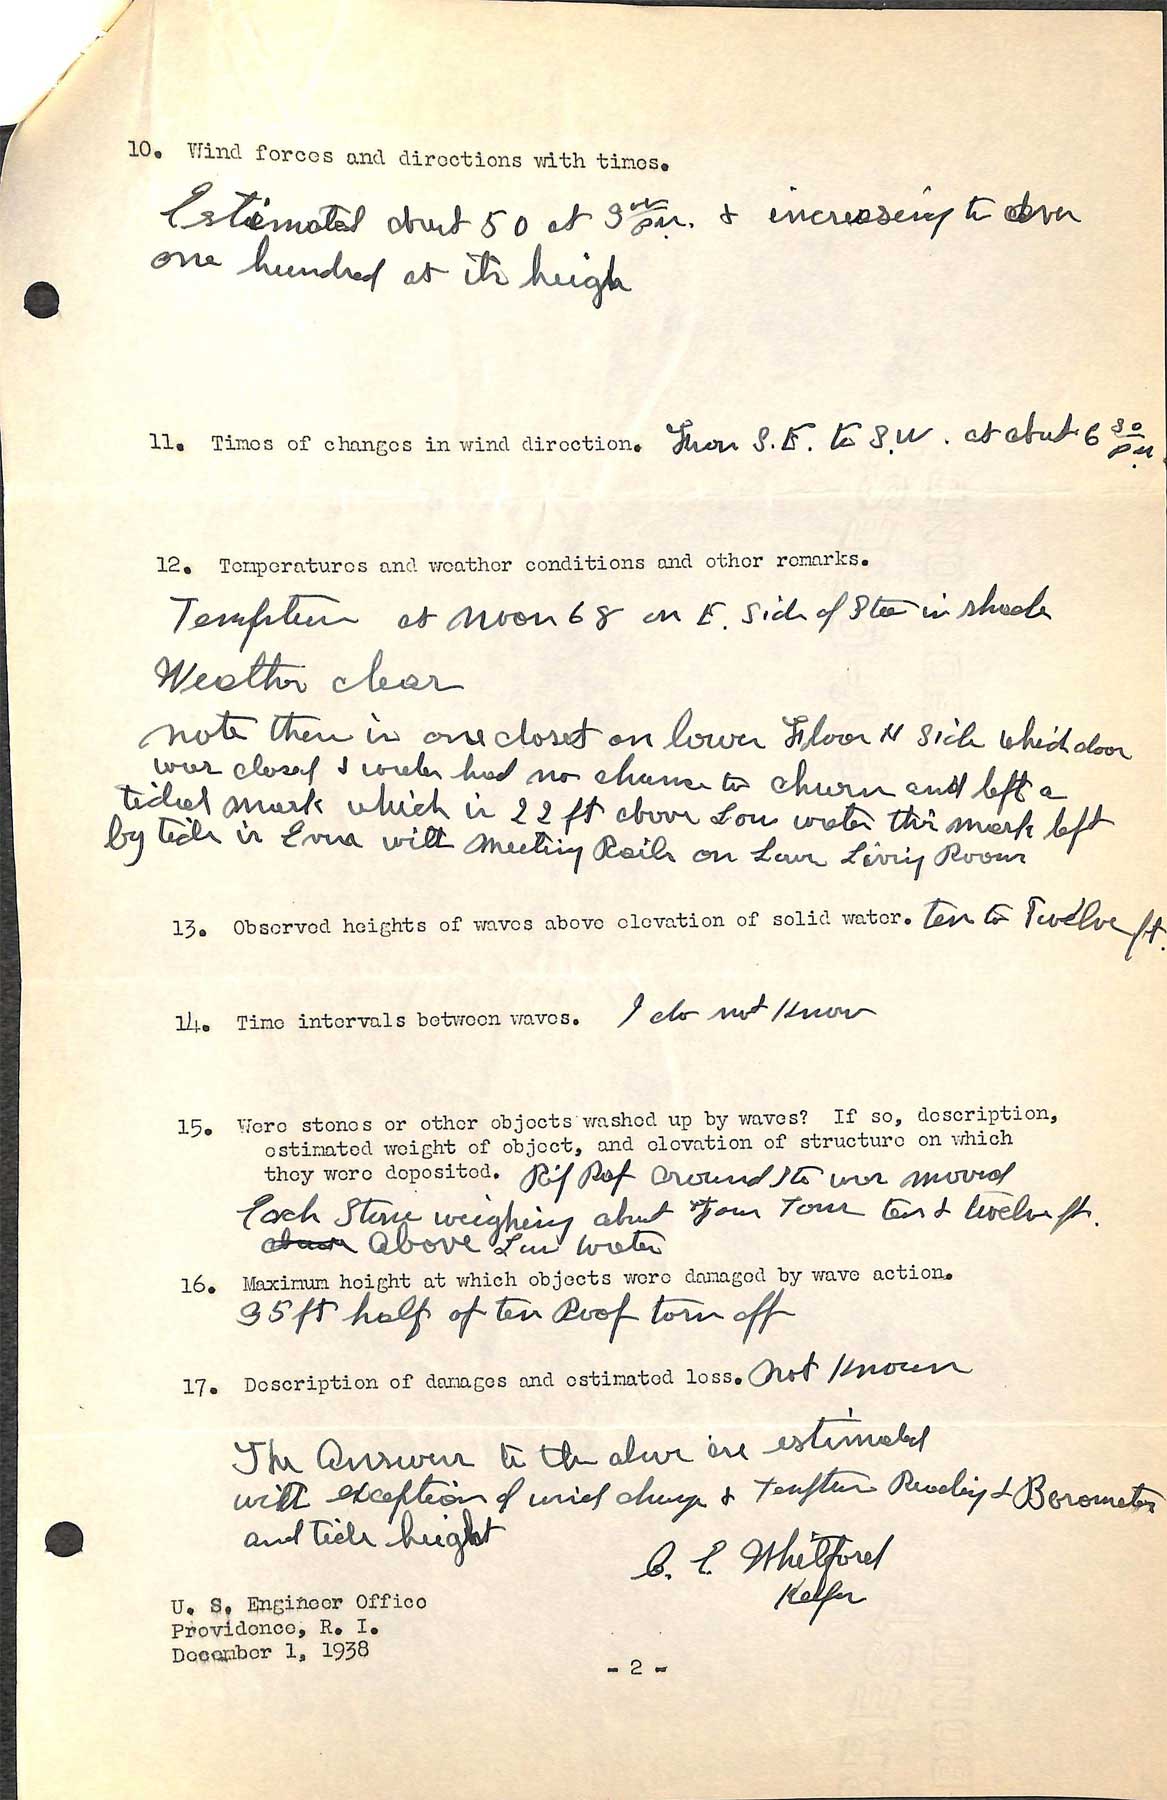 Sabin Point Light - A questionnaire regarding the hurricane of September 21, 1938